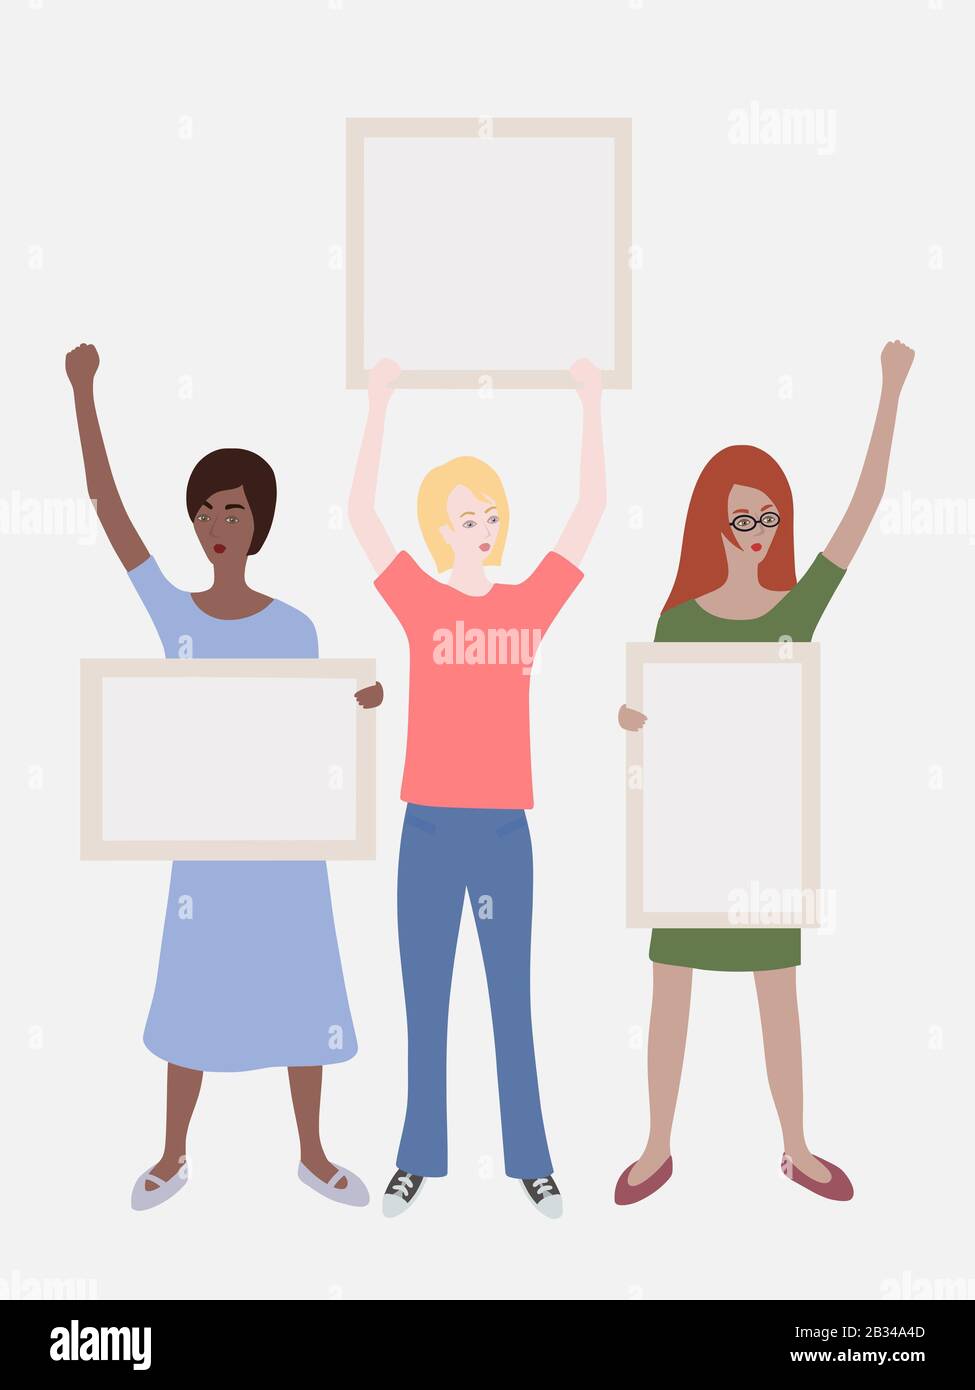 Illustration de trois femmes différentes se tenant dans la manifestation avec des affiches ou des tableaux vides (espace pour le texte) dans un fond clair Banque D'Images